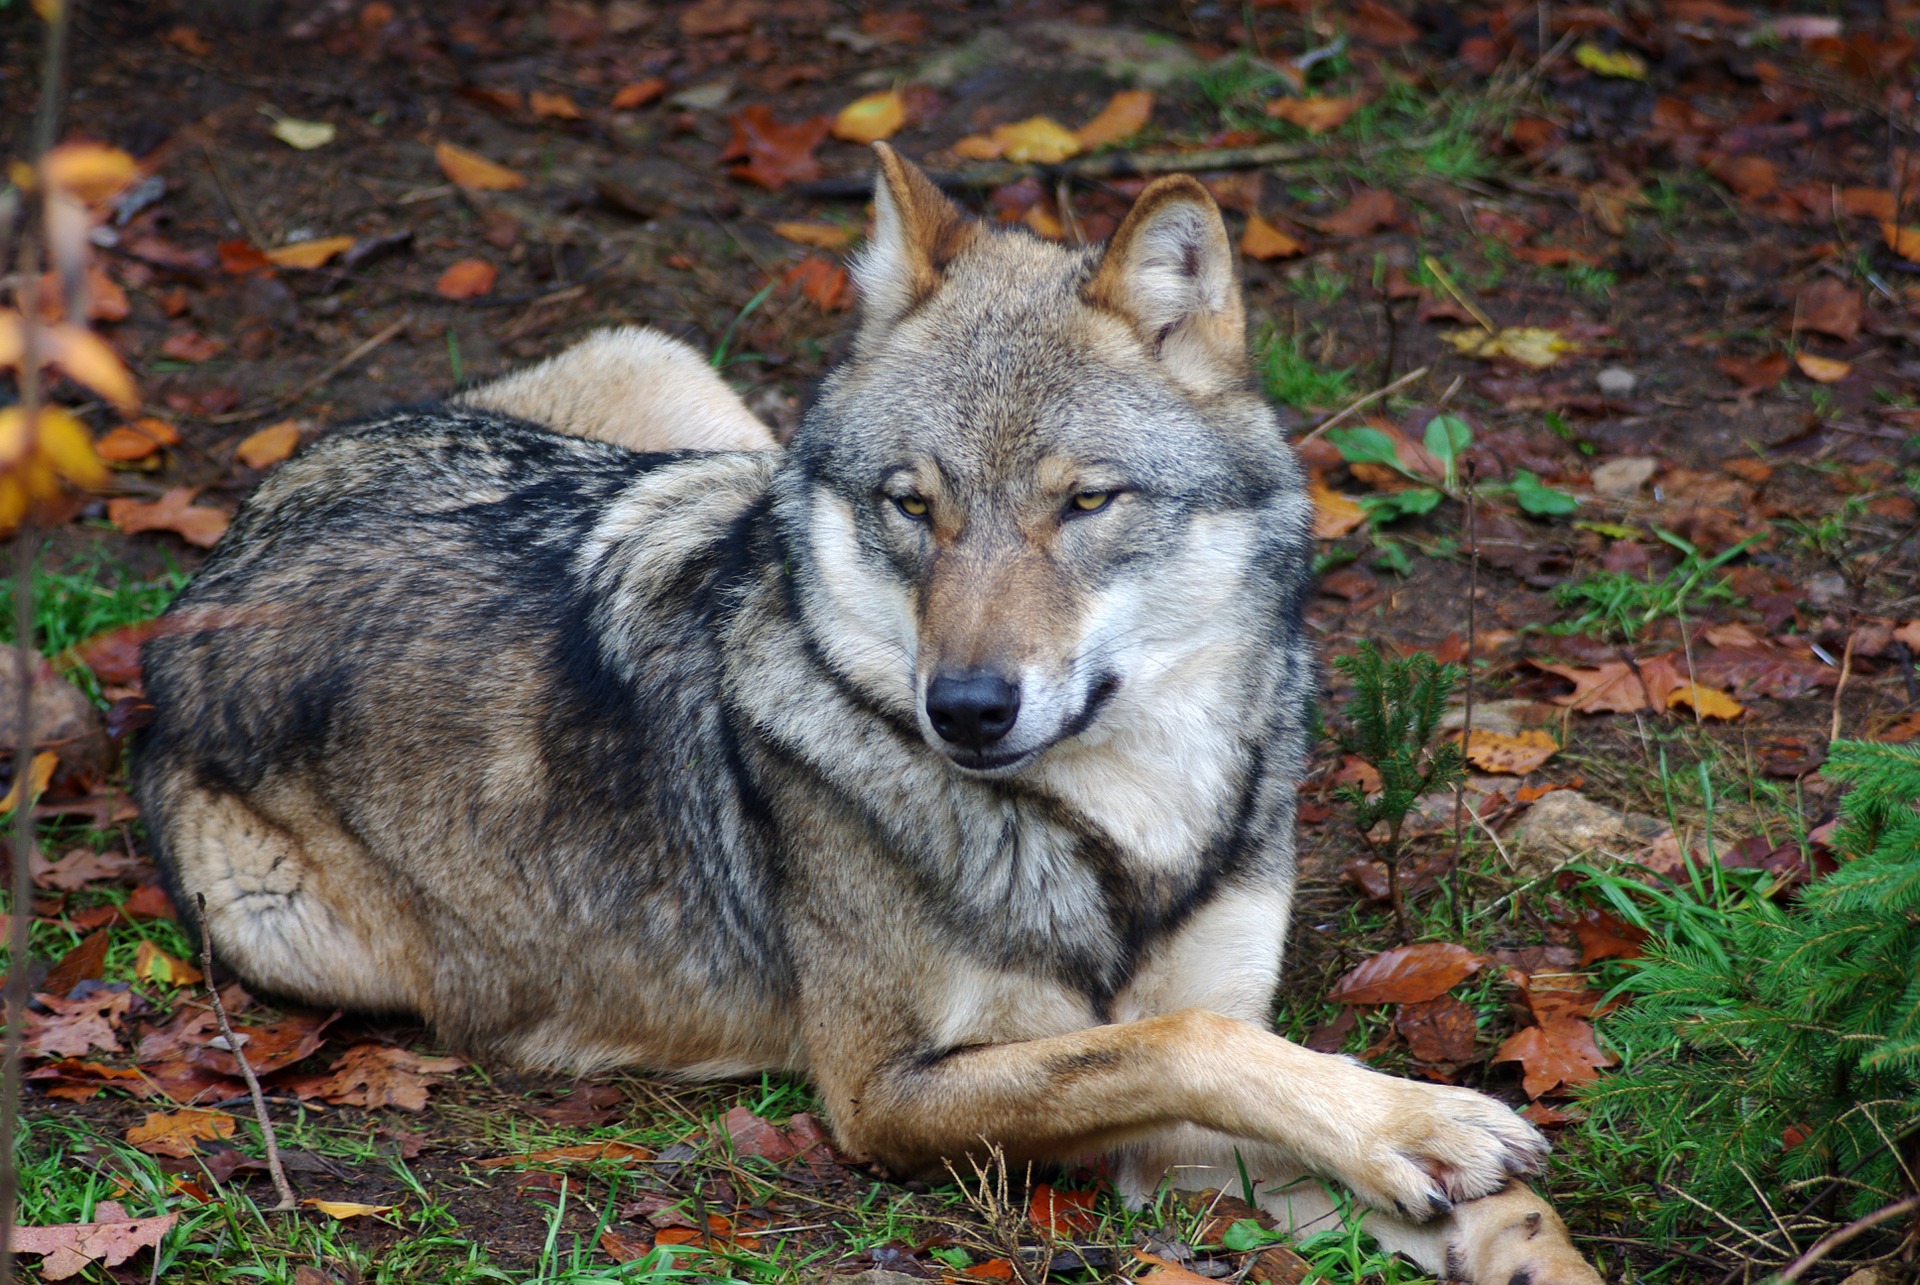 Wild wolf photo